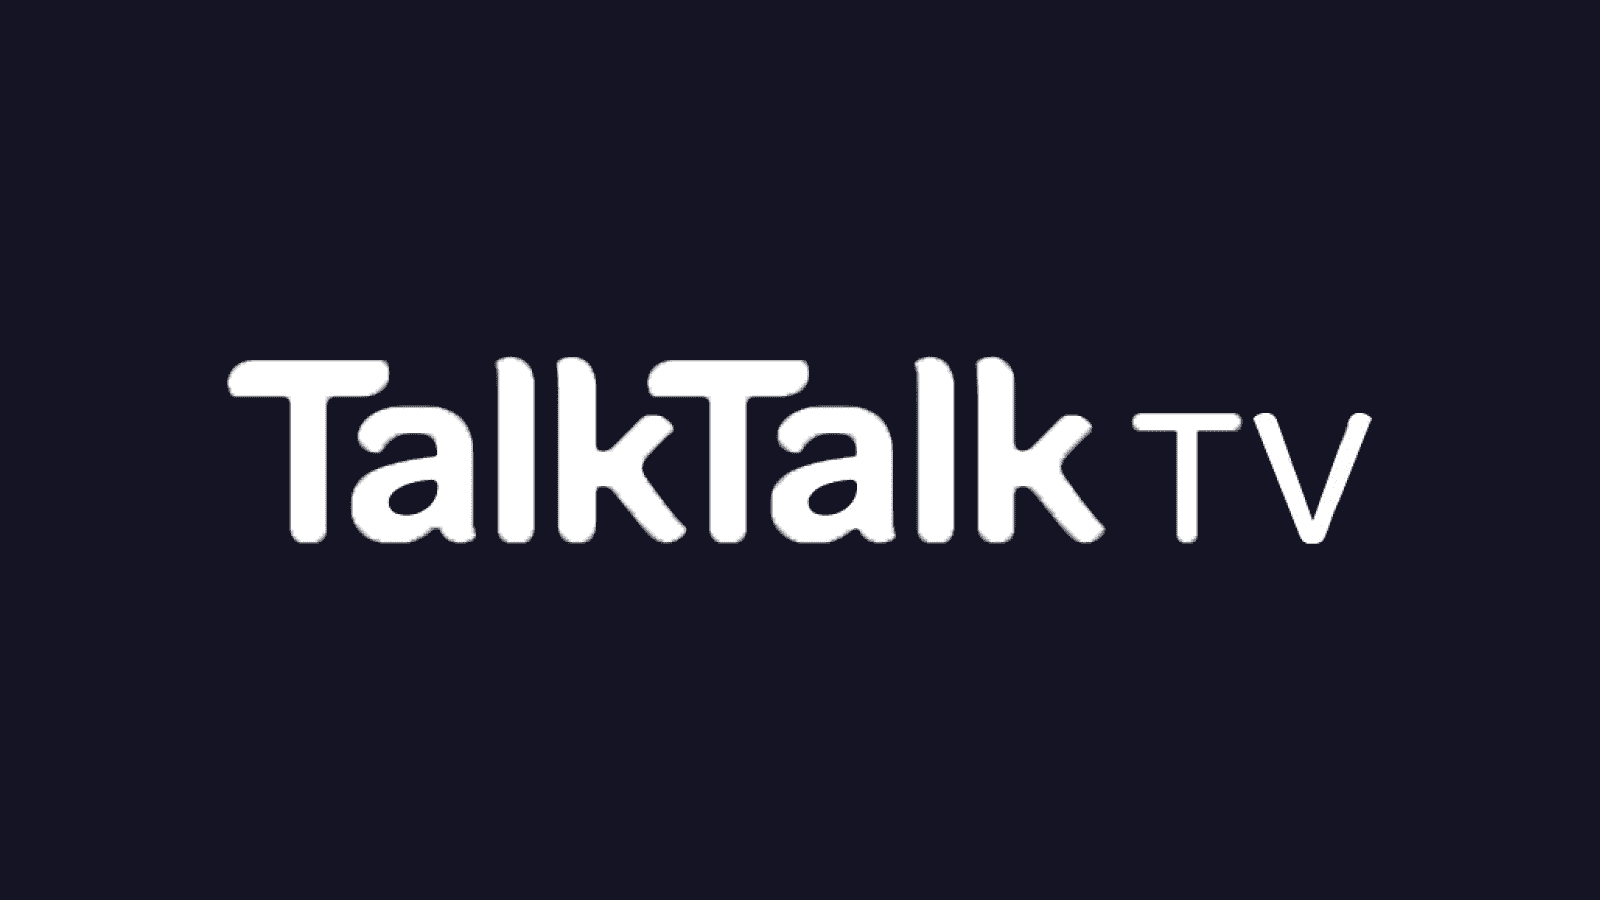 talktalk TV logo